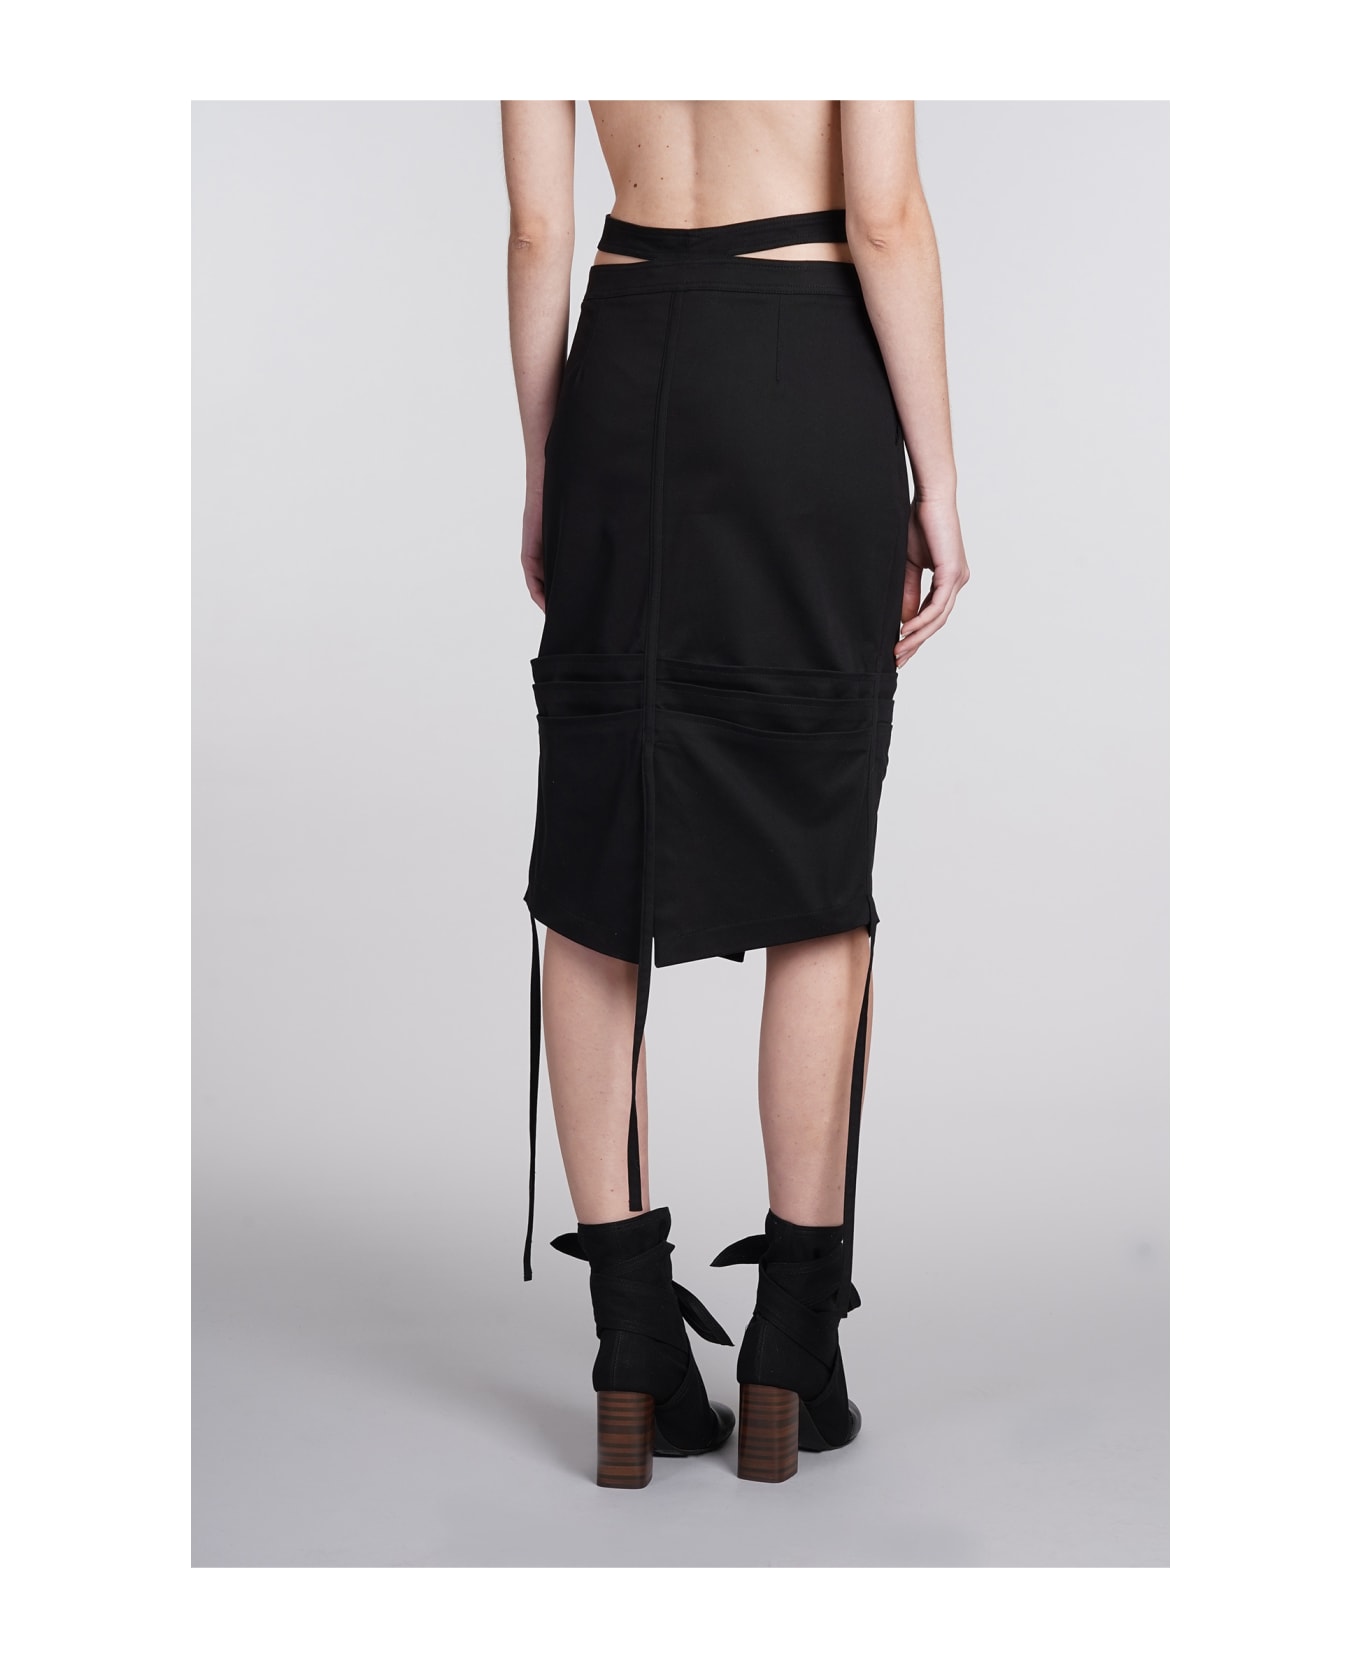 ANDREĀDAMO Skirt In Black Cotton - black スカート